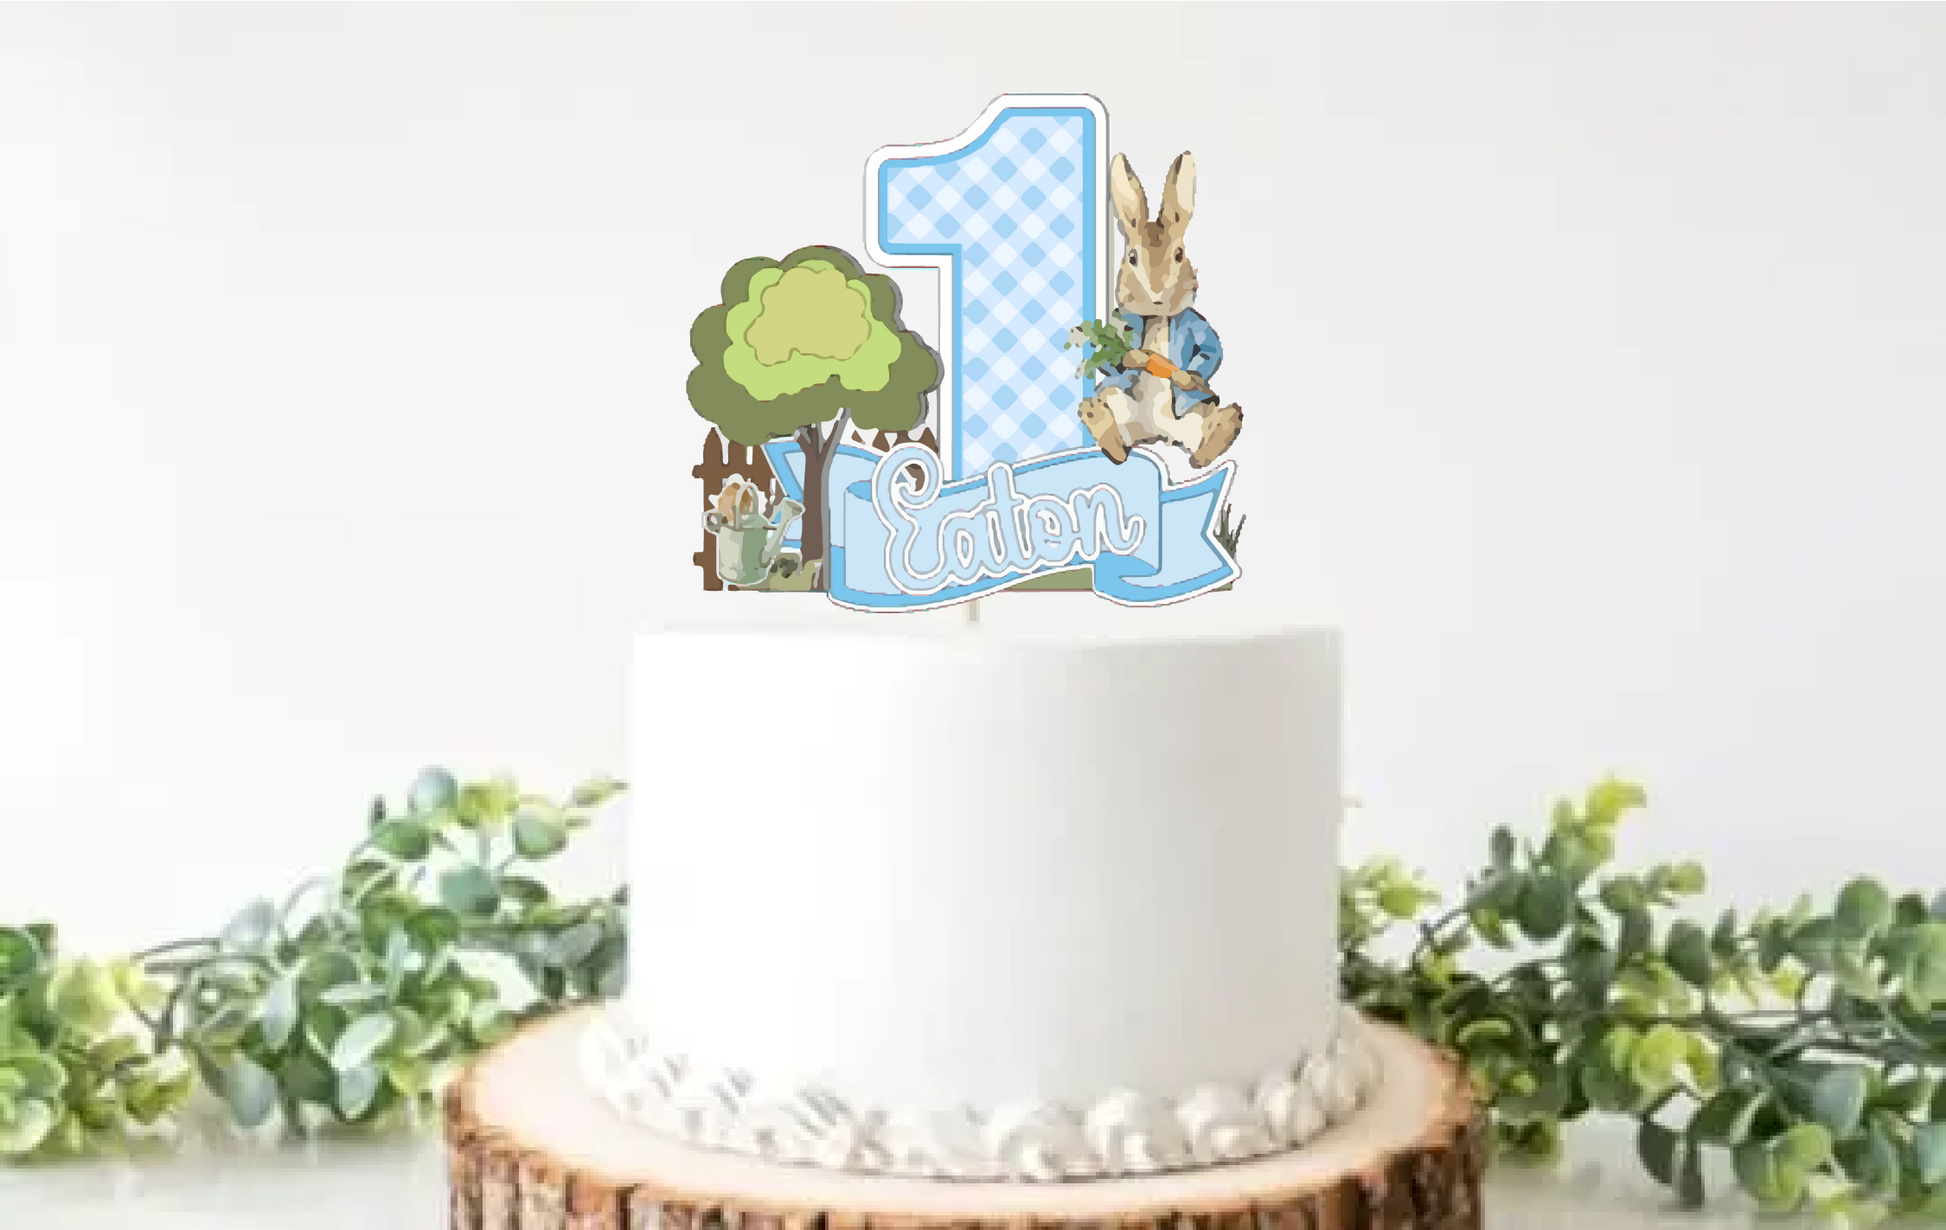 Peter Rabbit Baby Shower Cake